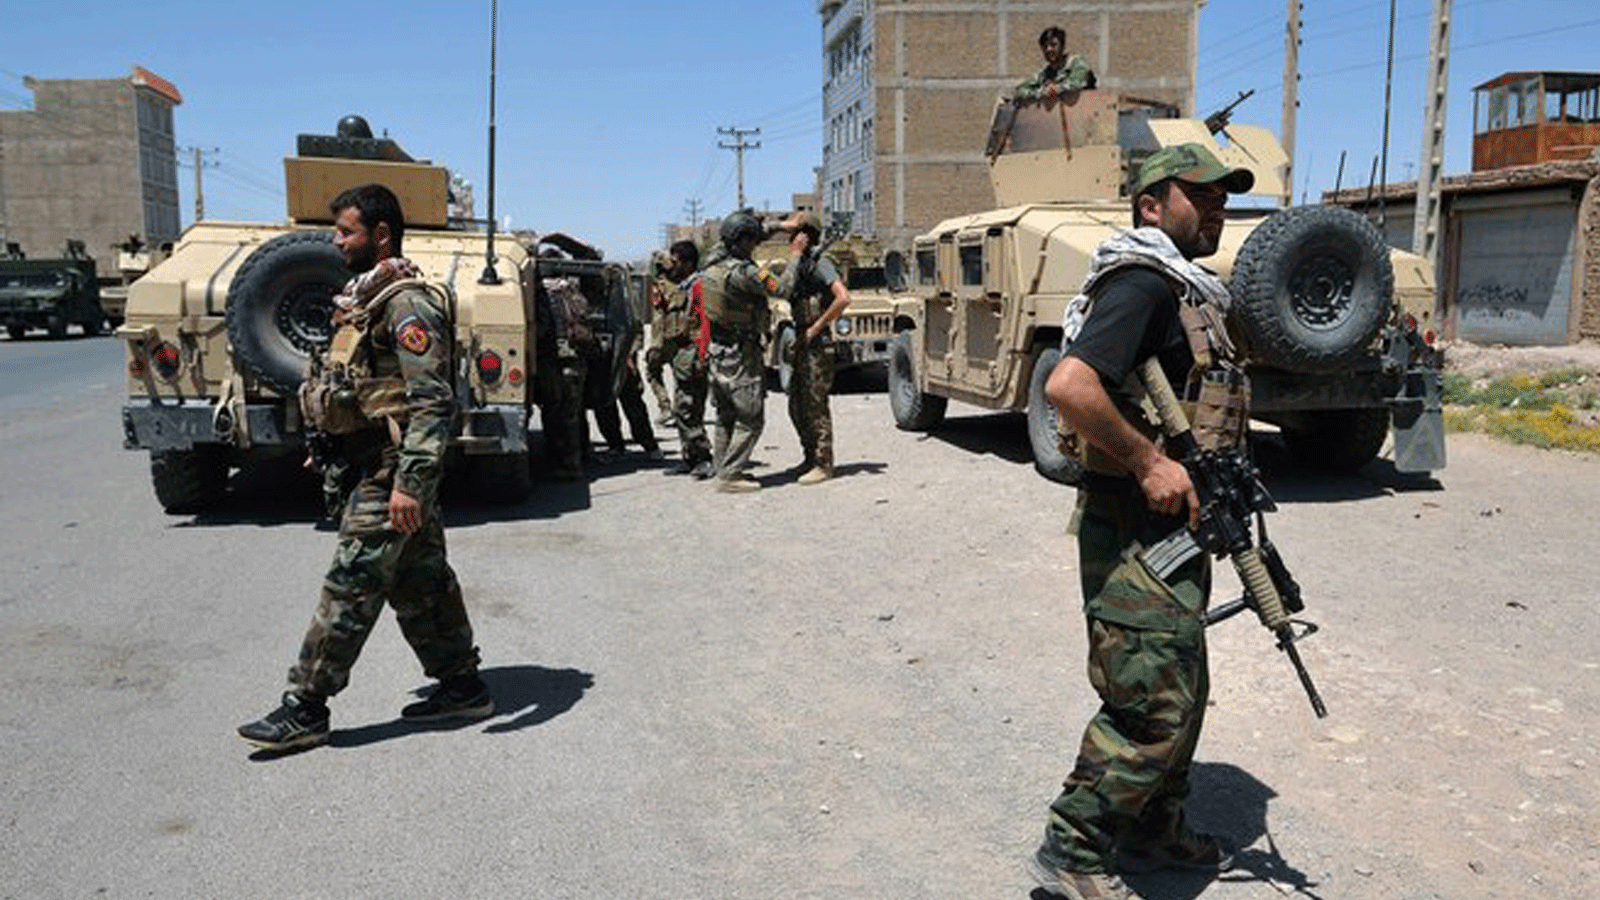  قوات كوماندوز الجيش الوطني الأفغاني تسير على طول طريق وسط قتال مستمر بين طالبان وقوات الأمن الأفغانية في منطقة إنجيل بمقاطعة هرات. في 1 آب/أغسطس 2021